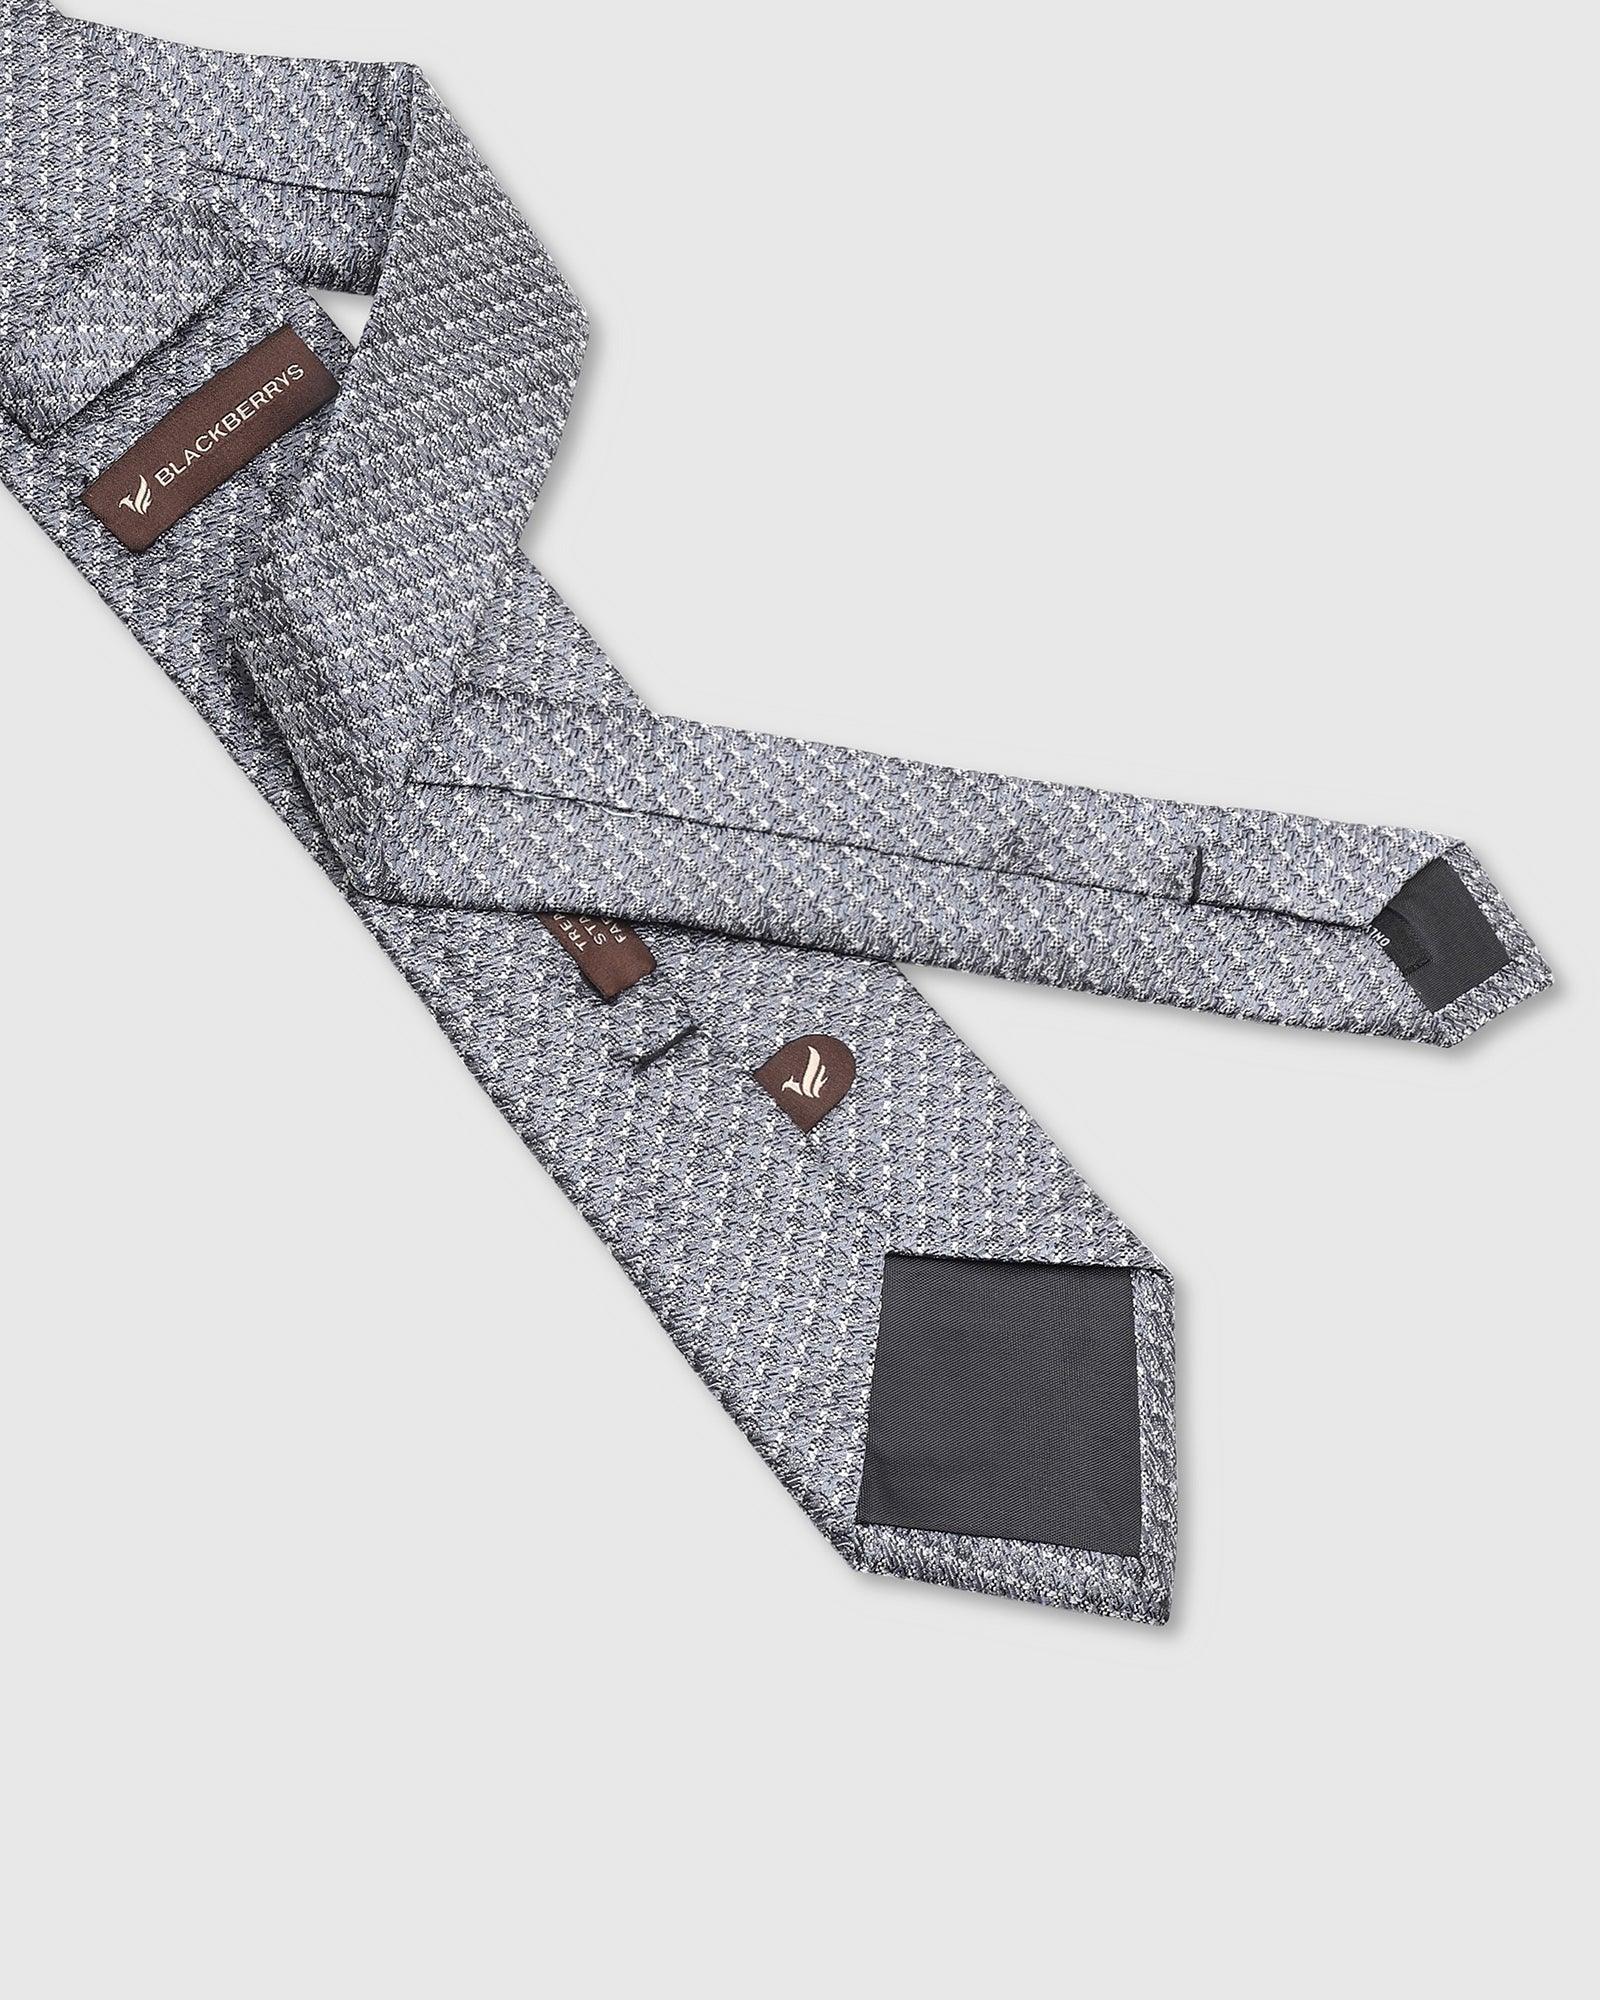 Printed Tie In Grey (Twinkle) - Blackberrys